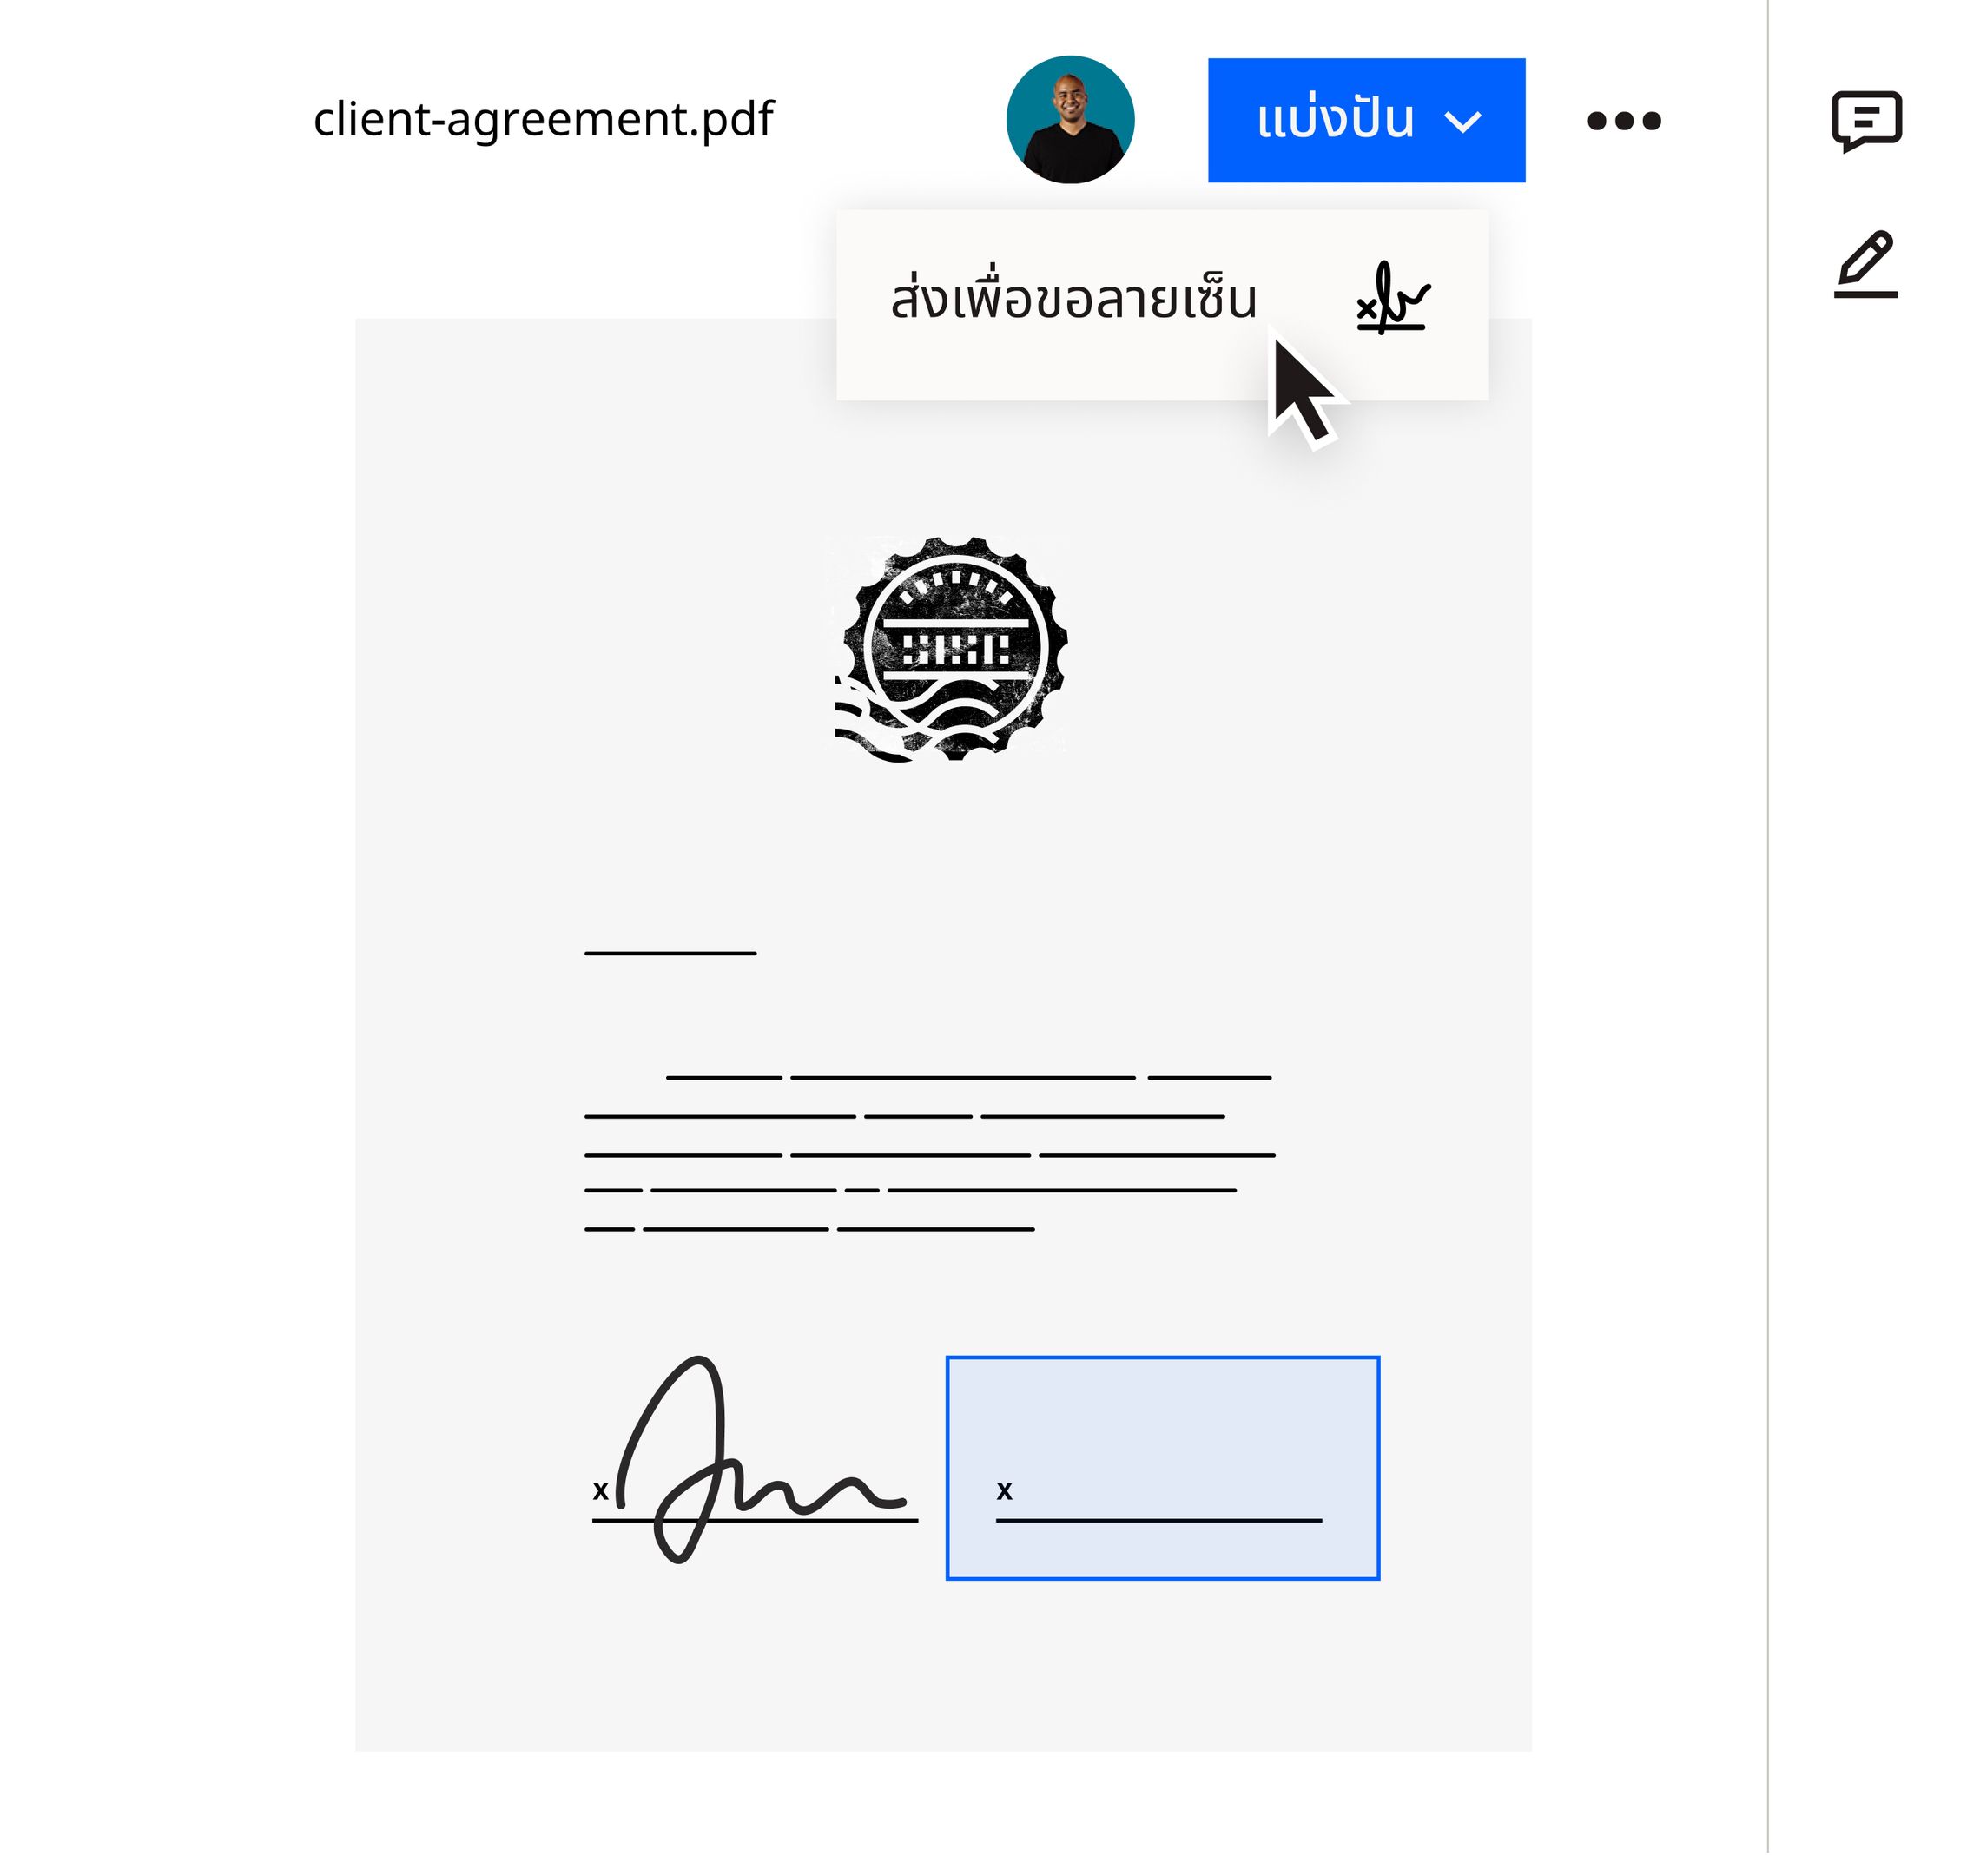 ผู้ใช้งานคลิกที่ตัวเลือก Send for Signature ในเมนูดร็อปดาวน์ของ Share ภายในอินเตอร์เฟสของ Dropbox